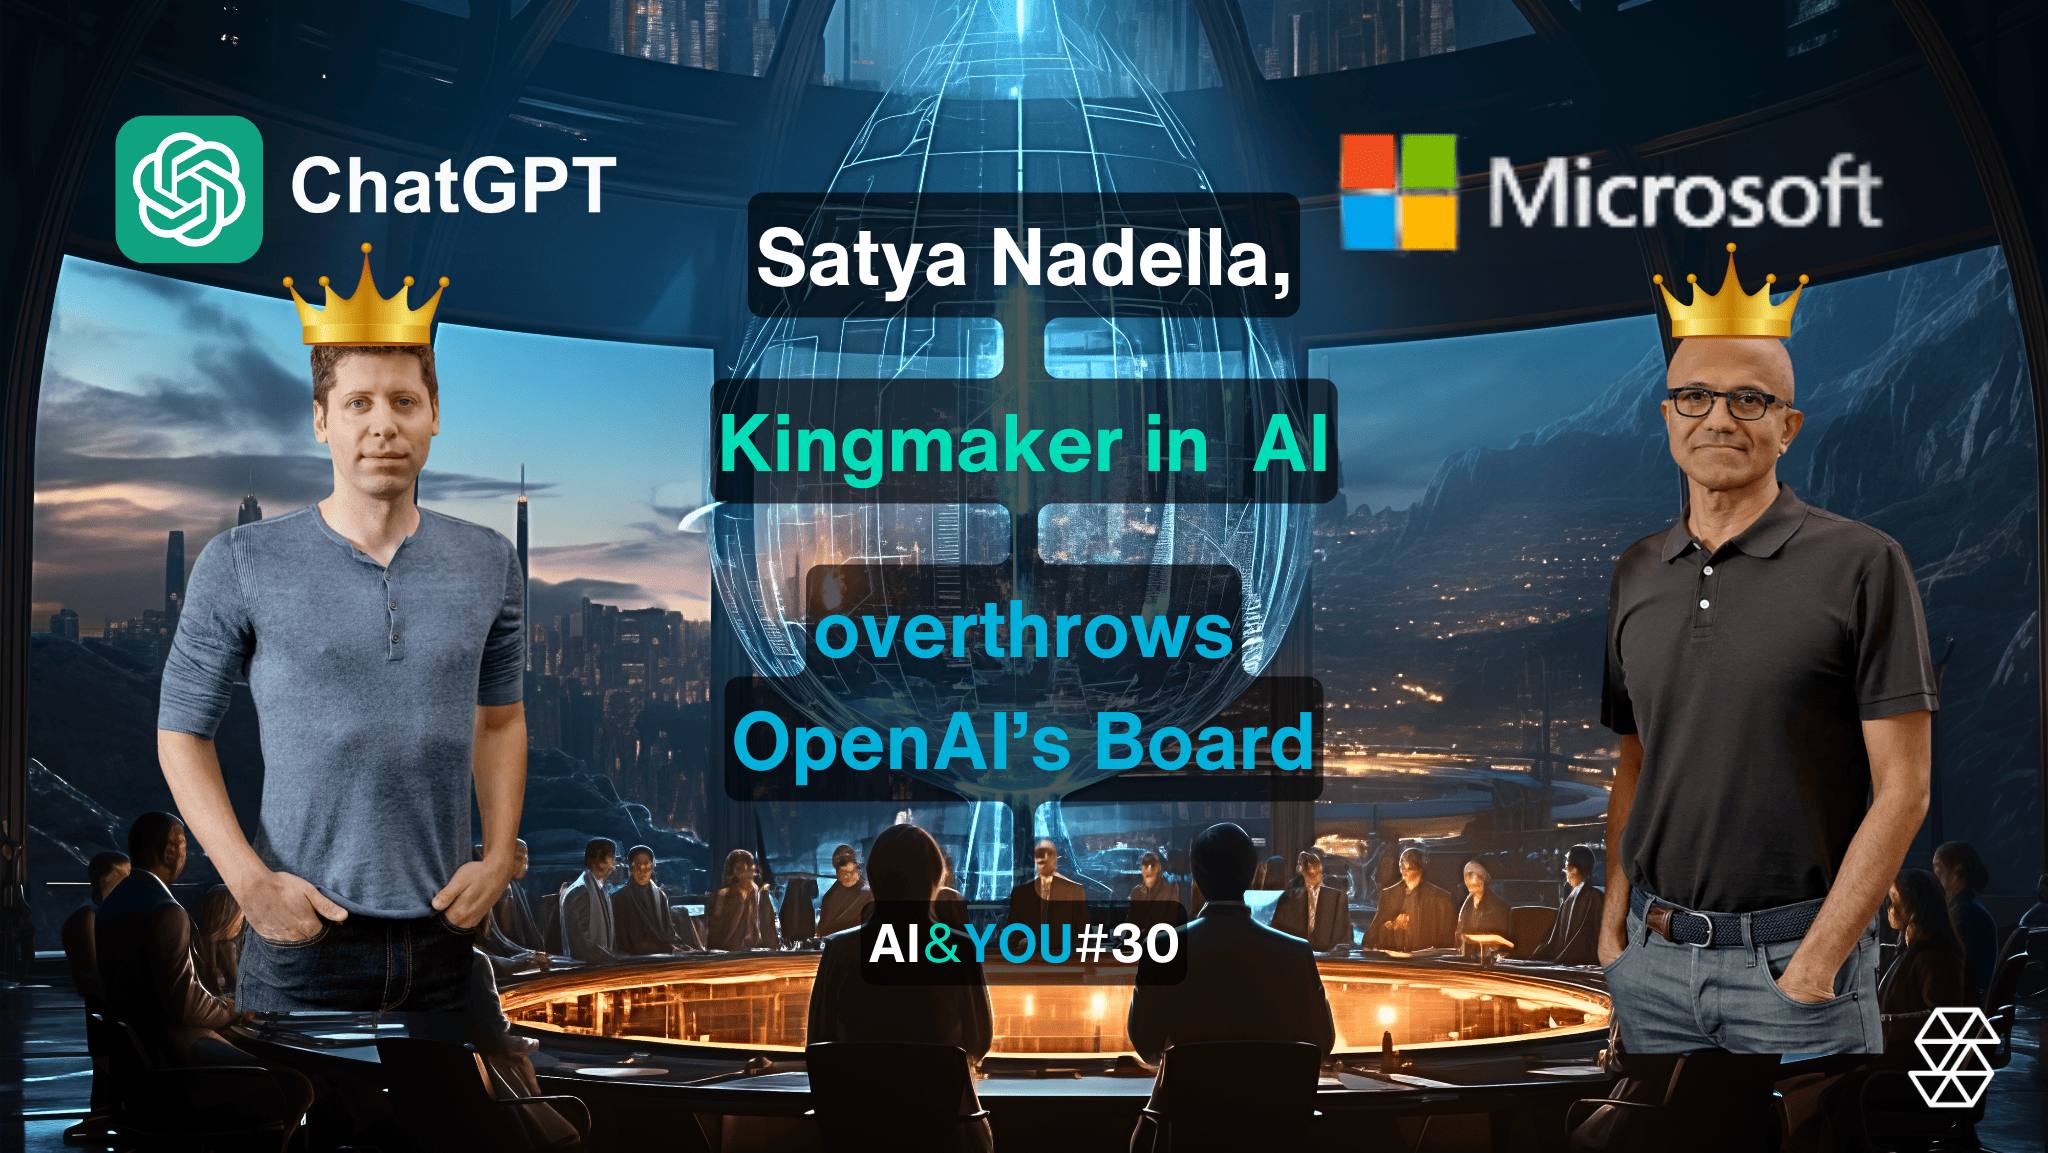 AI&YOU#30: Сатья Наделла грає в короля у світі АІ та скидає стару дошку Open AI